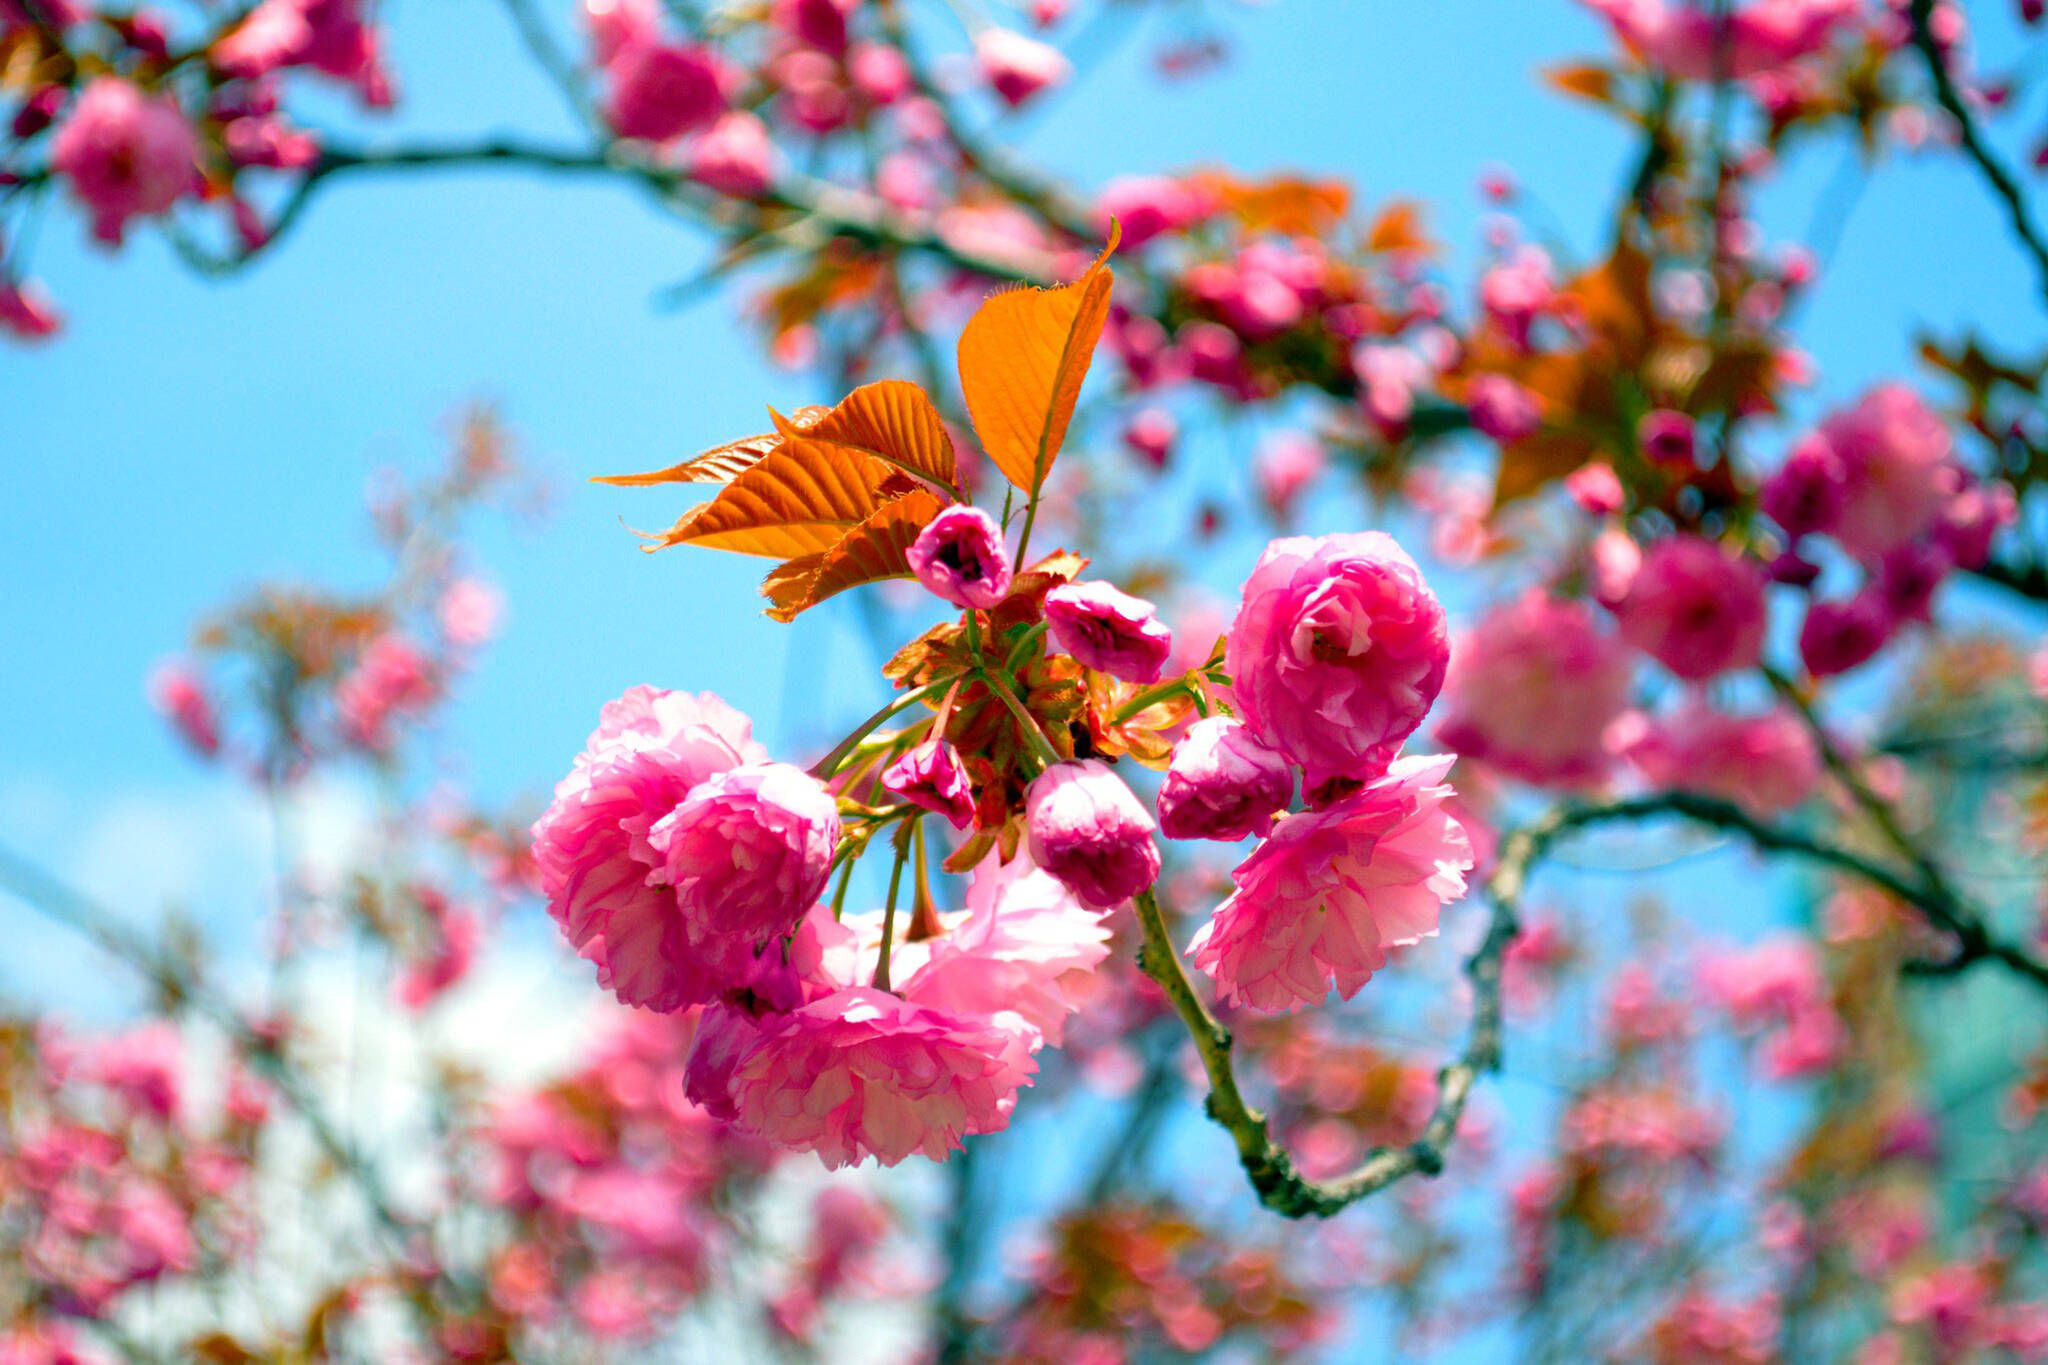 kariya park cherry blossoms